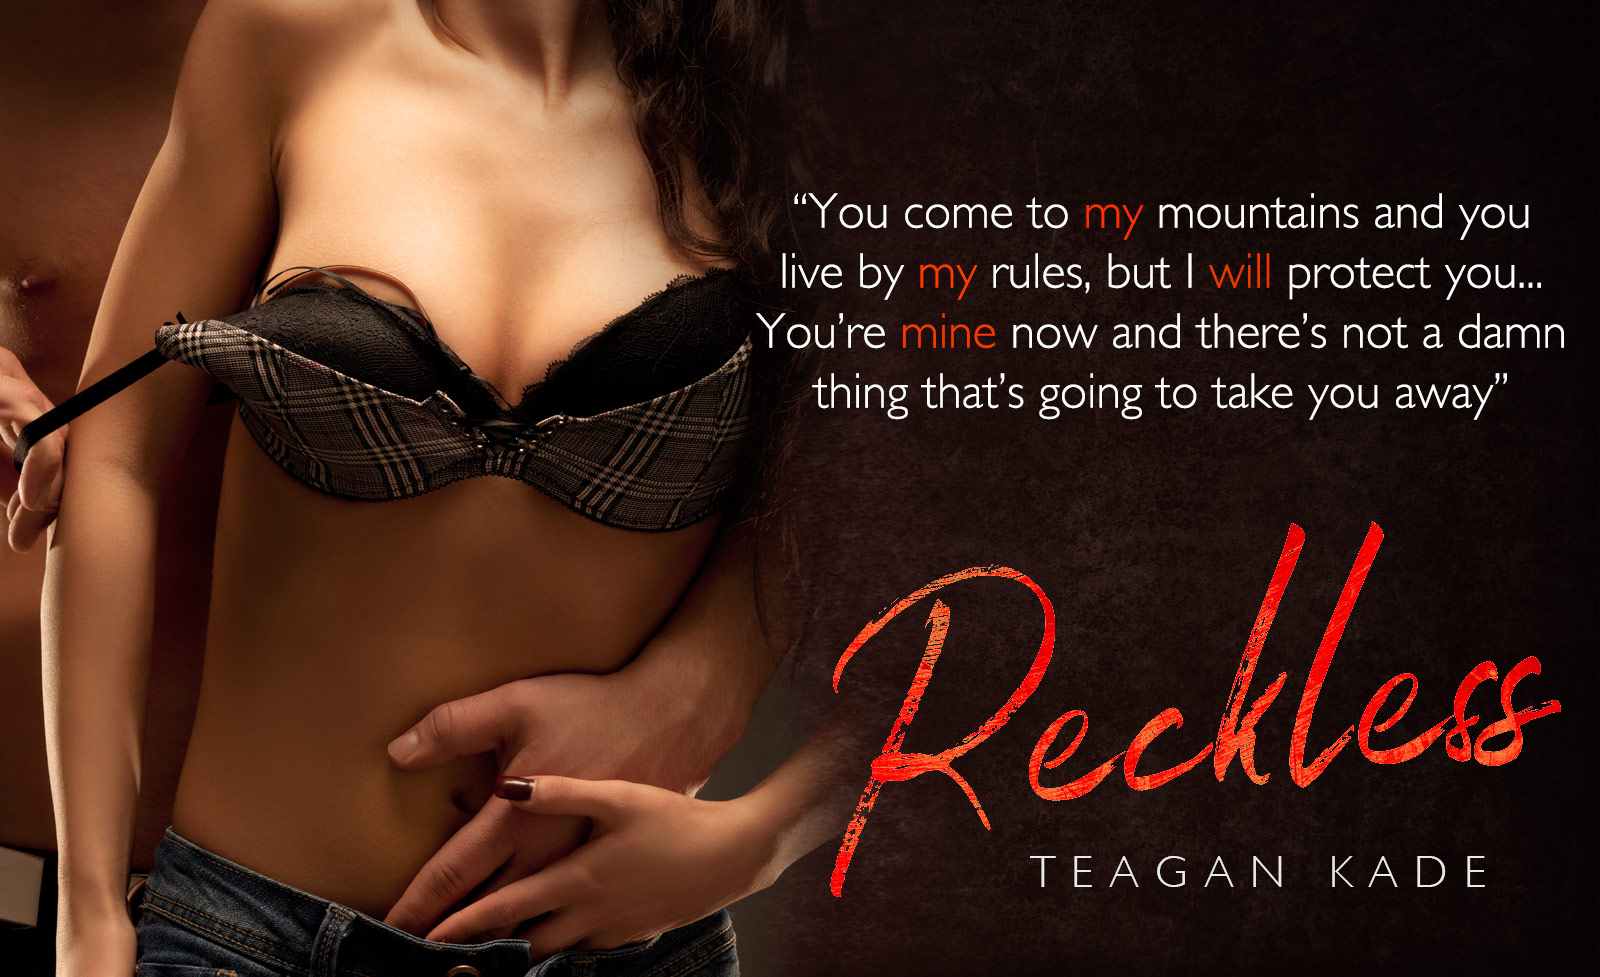 Tegan Kade Reckless Cover Reveal